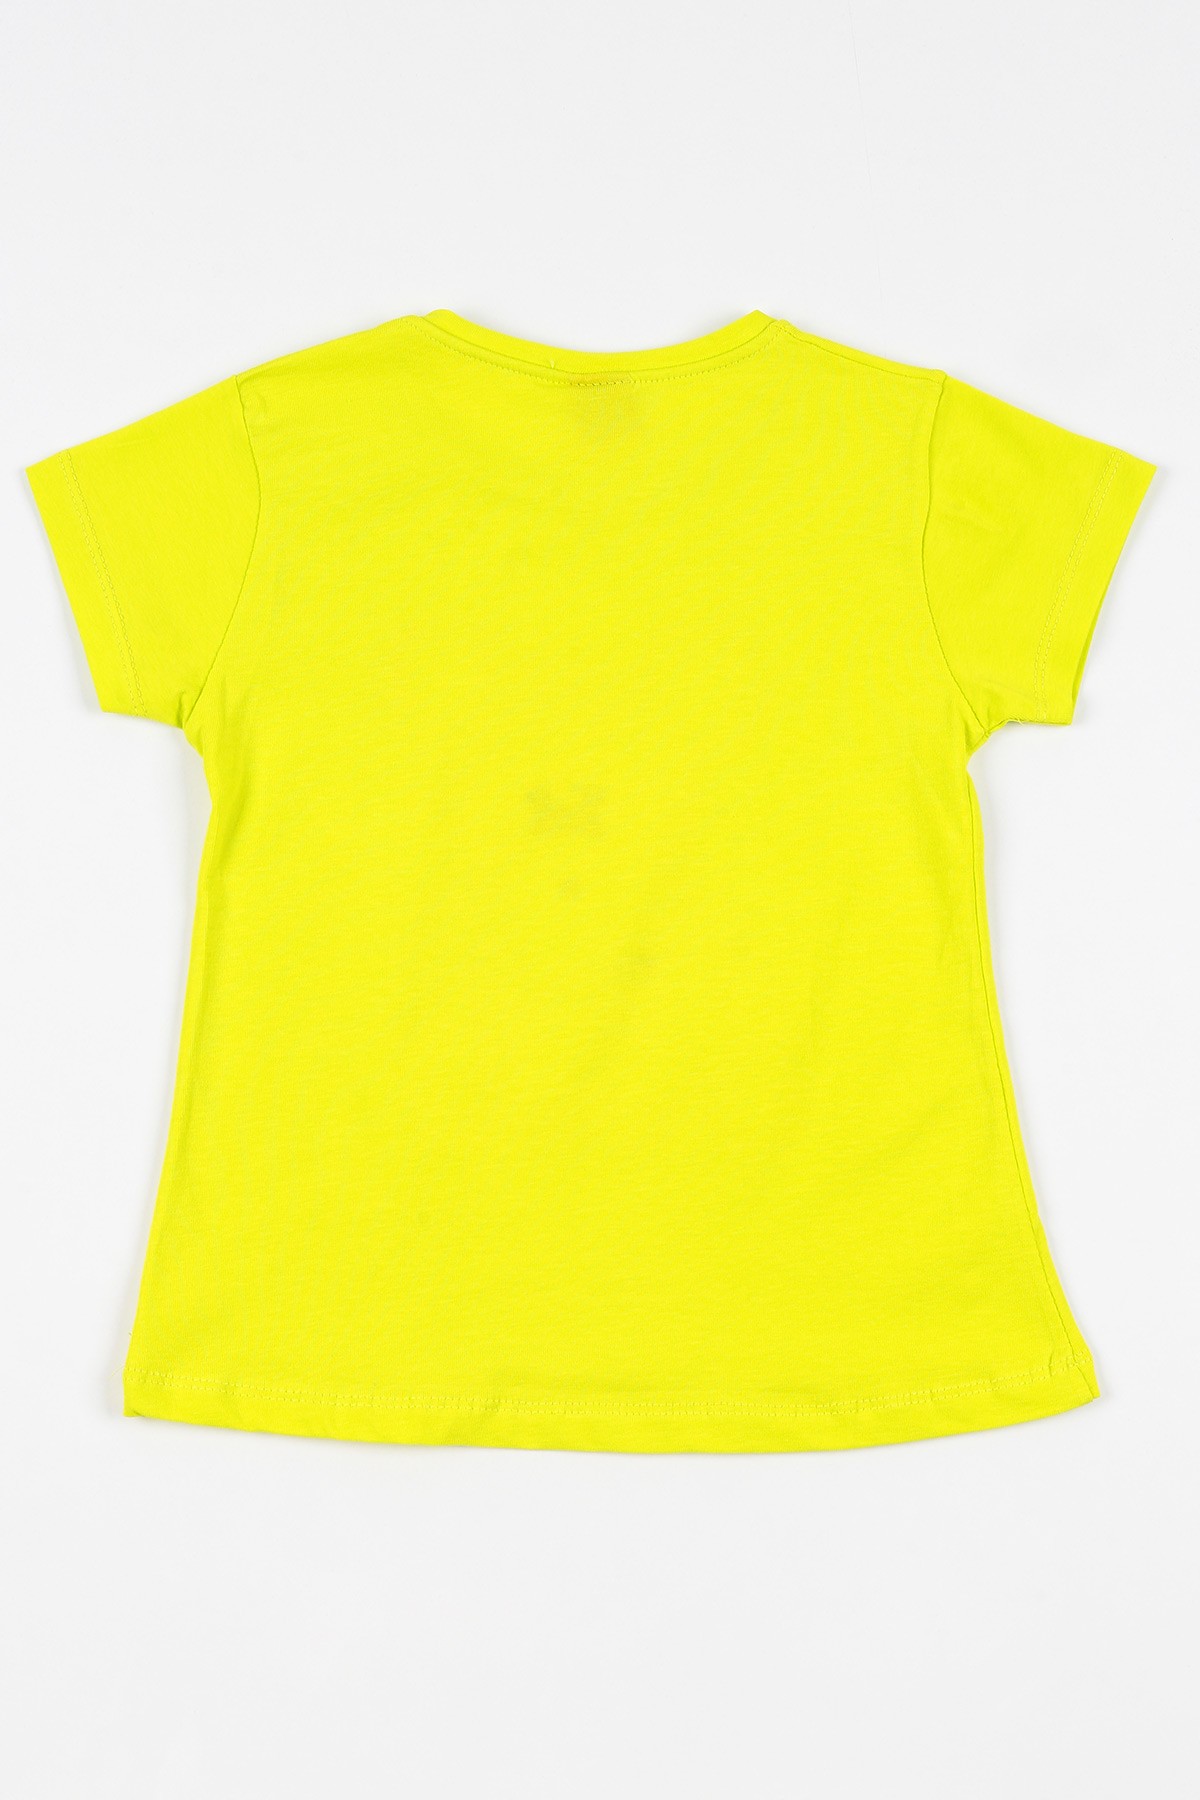 Fıstık Yeşili (5-8 yaş) Pul İşlemeli Kız Çocuk Tişört 110858